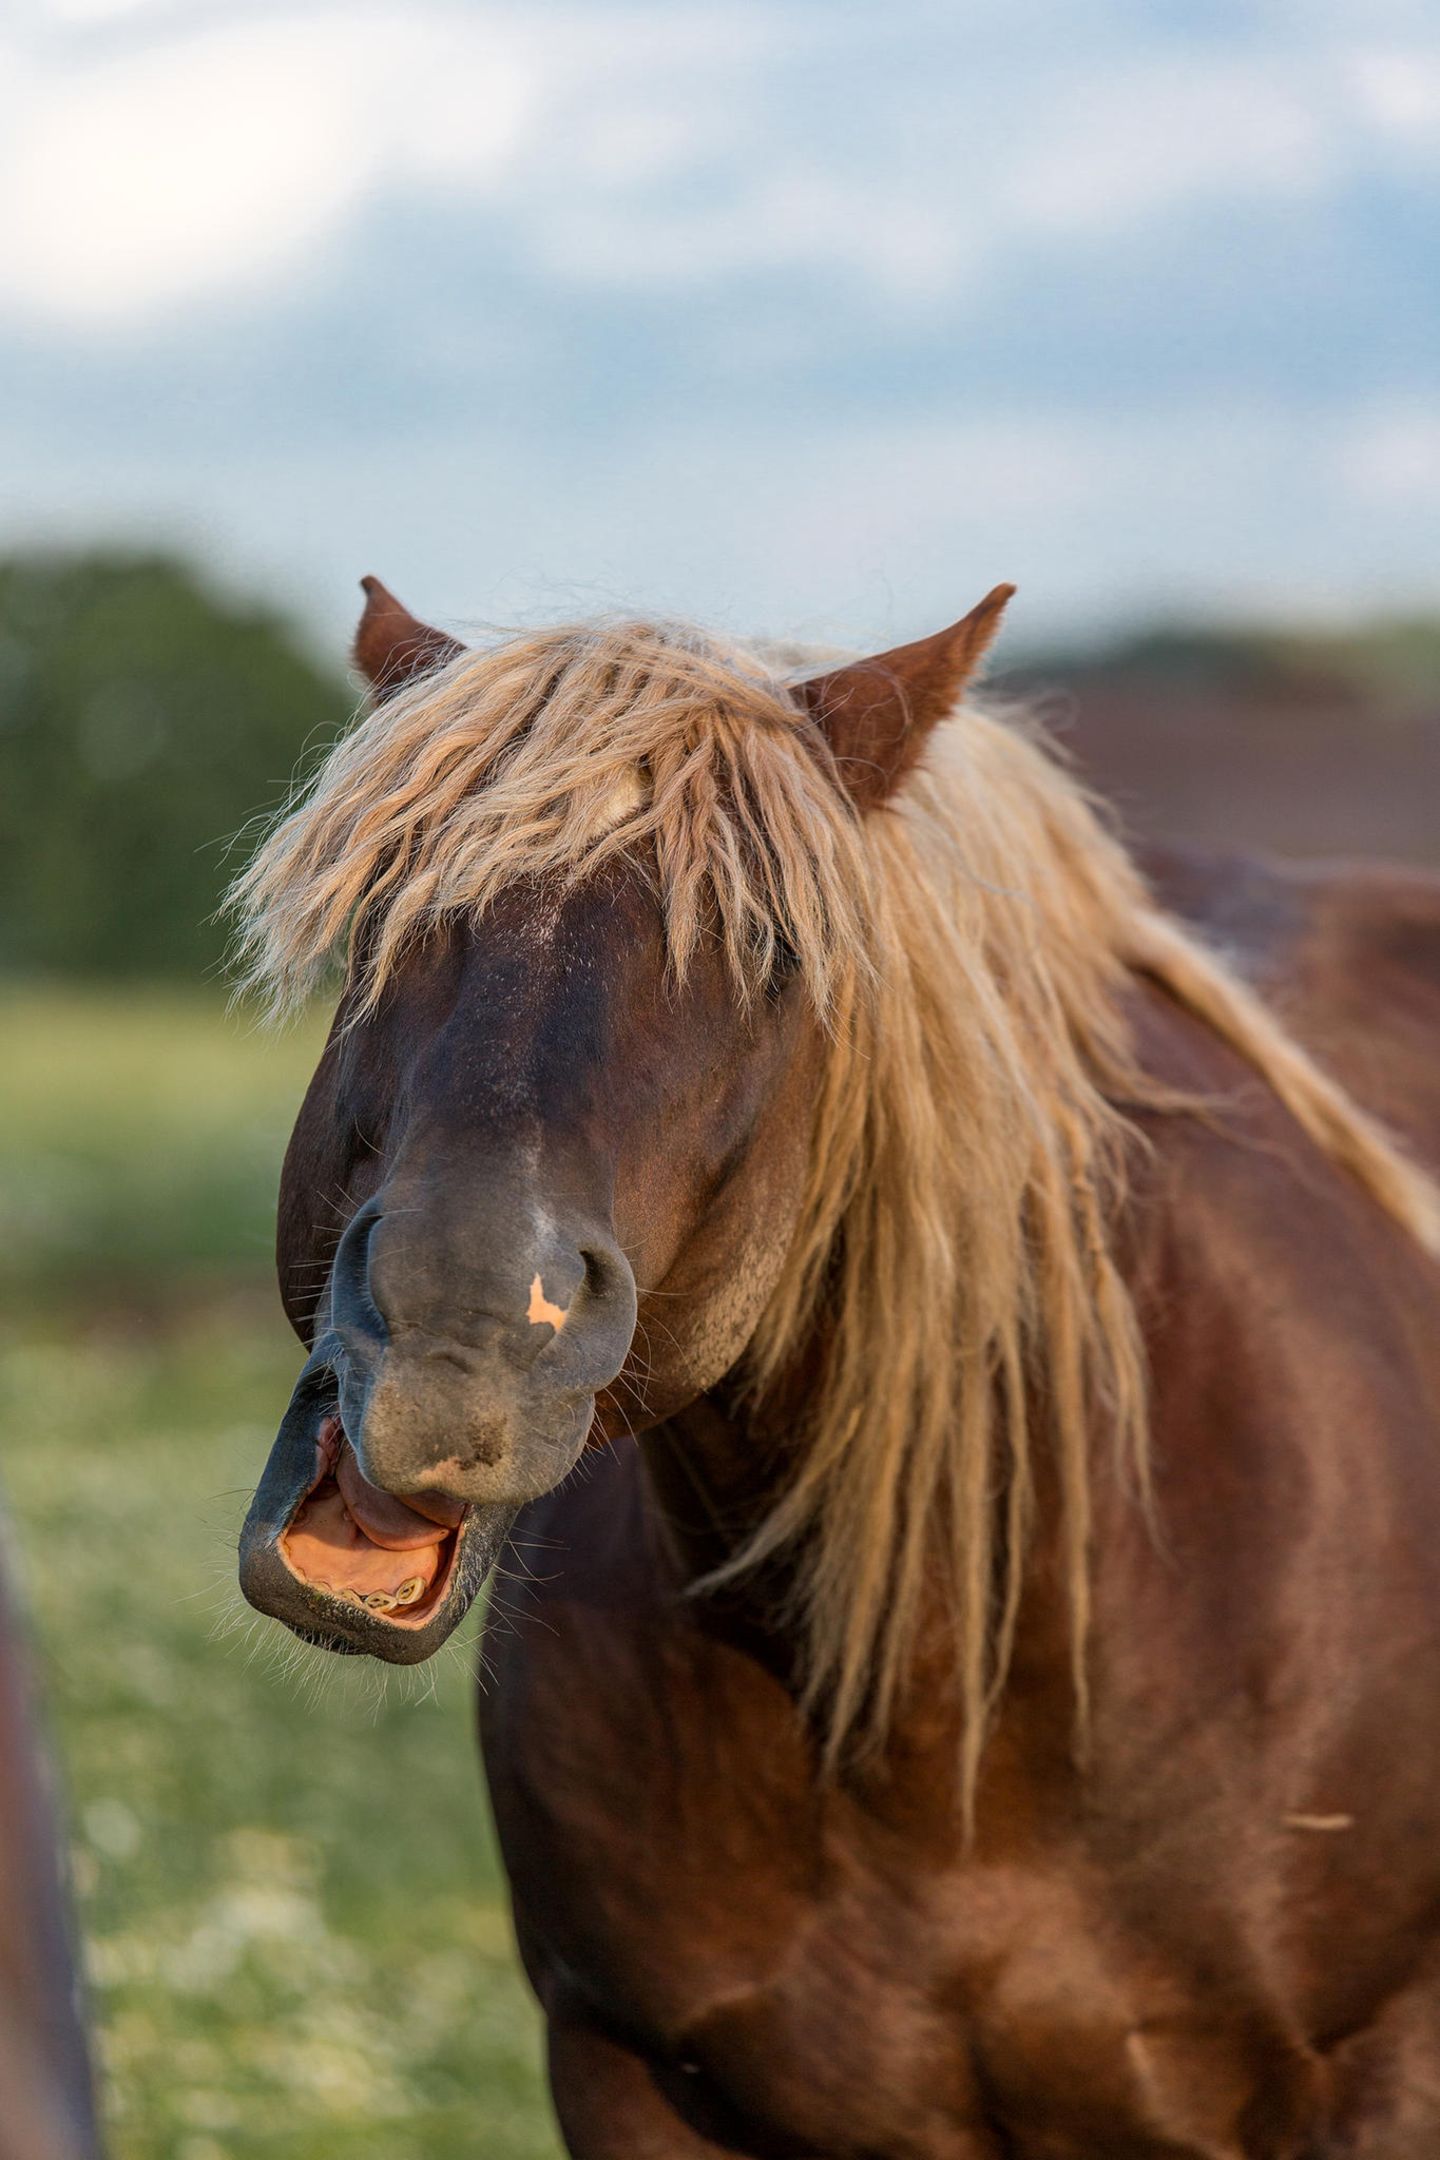 Haustier Fotowettbewerb: Pferd mit offenem Maul